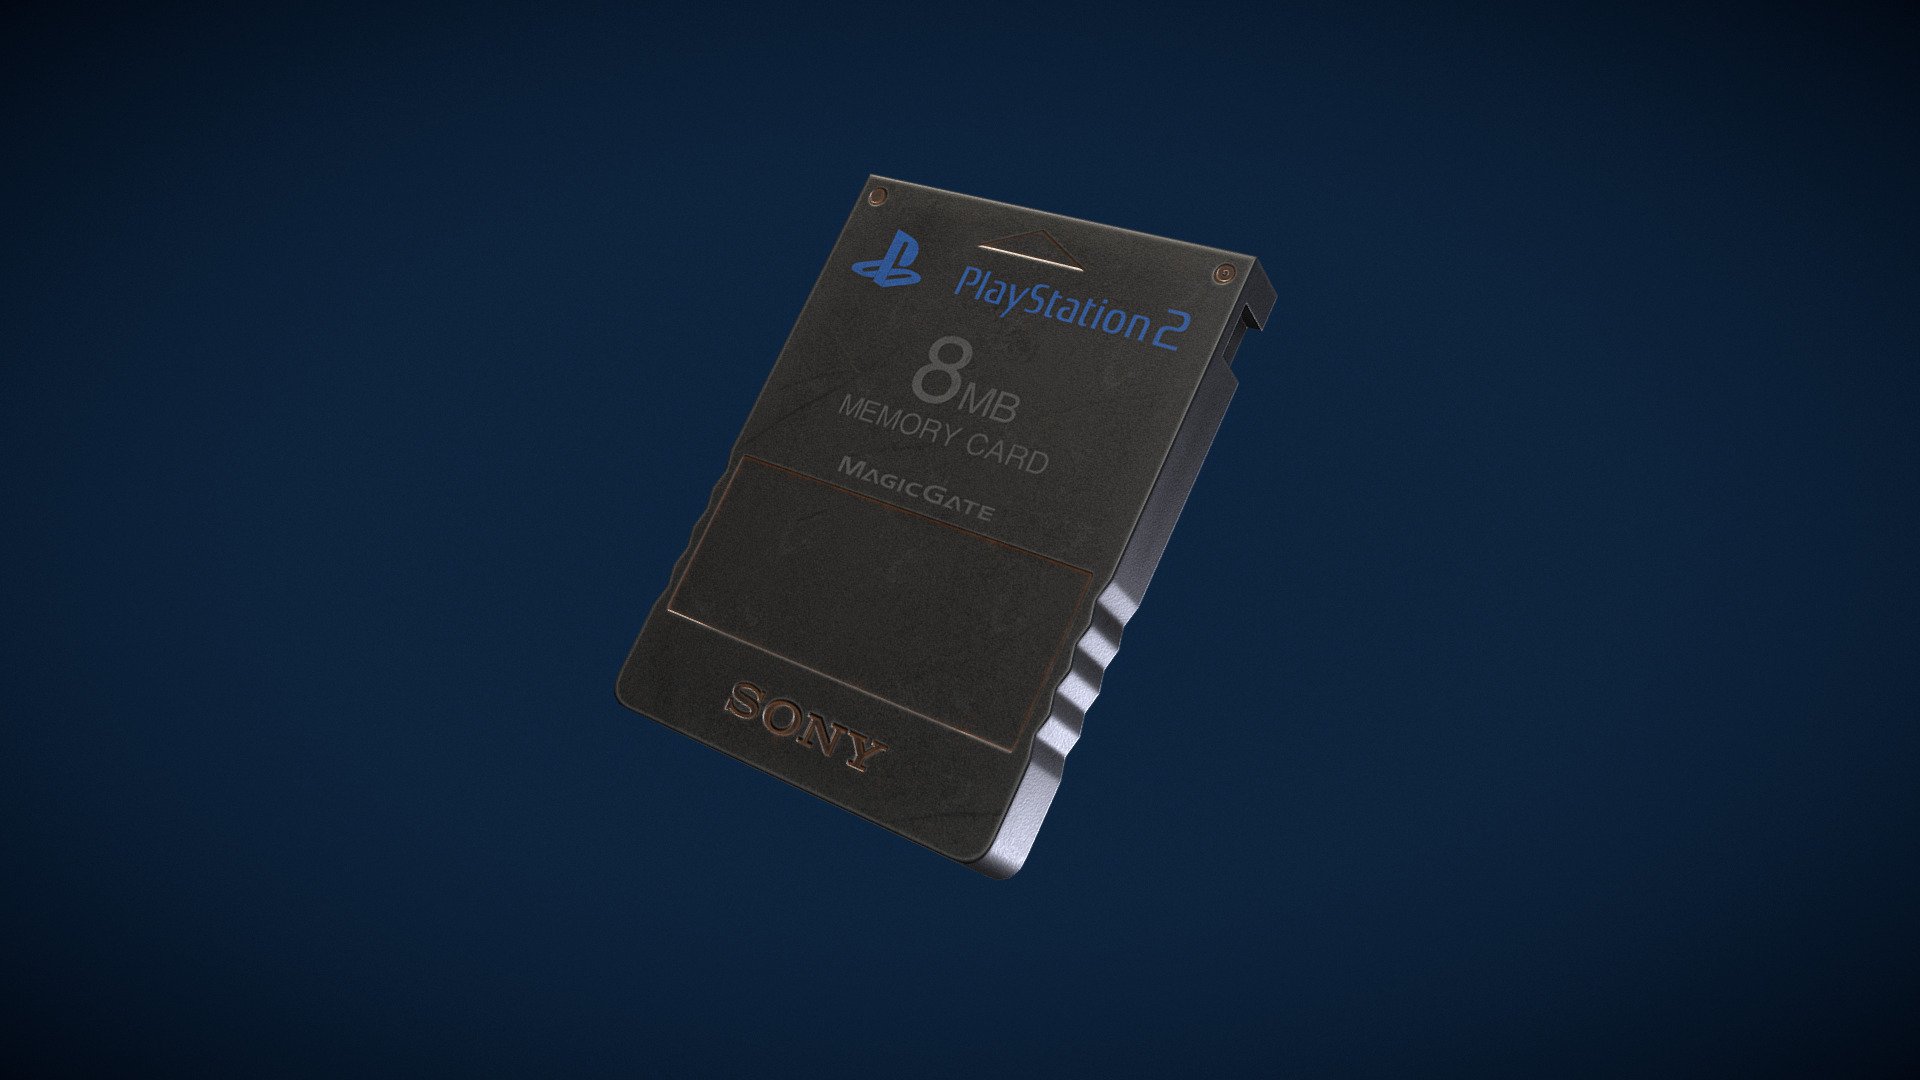 PlayStation 2 Memory Card - 3D model by richardstill002 3d model